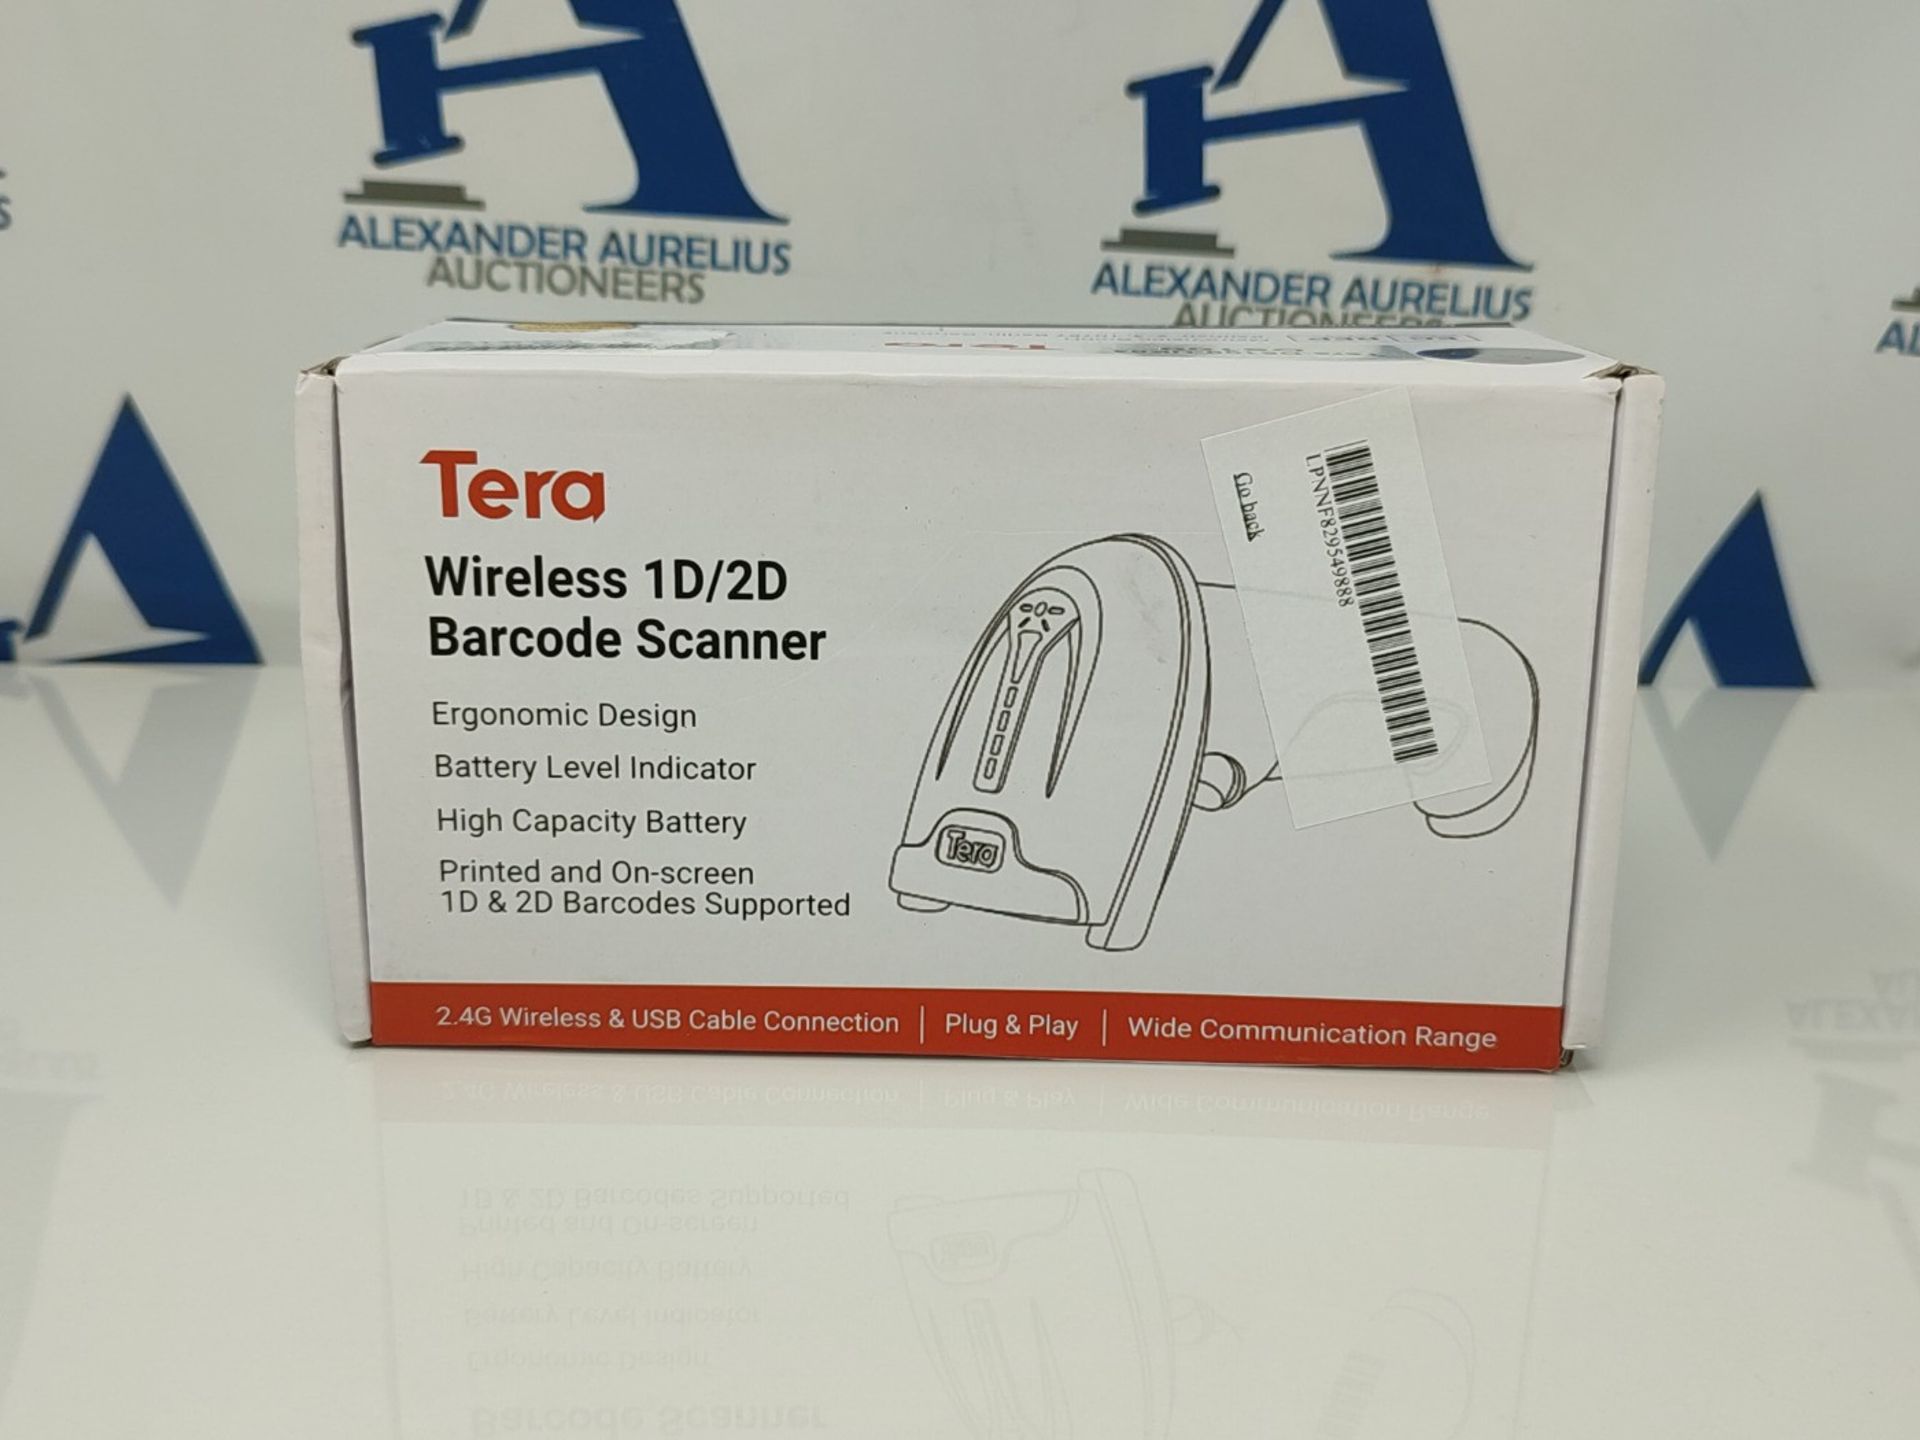 Tera 2D QR Barcode Scanner Wireless USB Wired 1D 2D Handheld Cordless Bar Code Reader